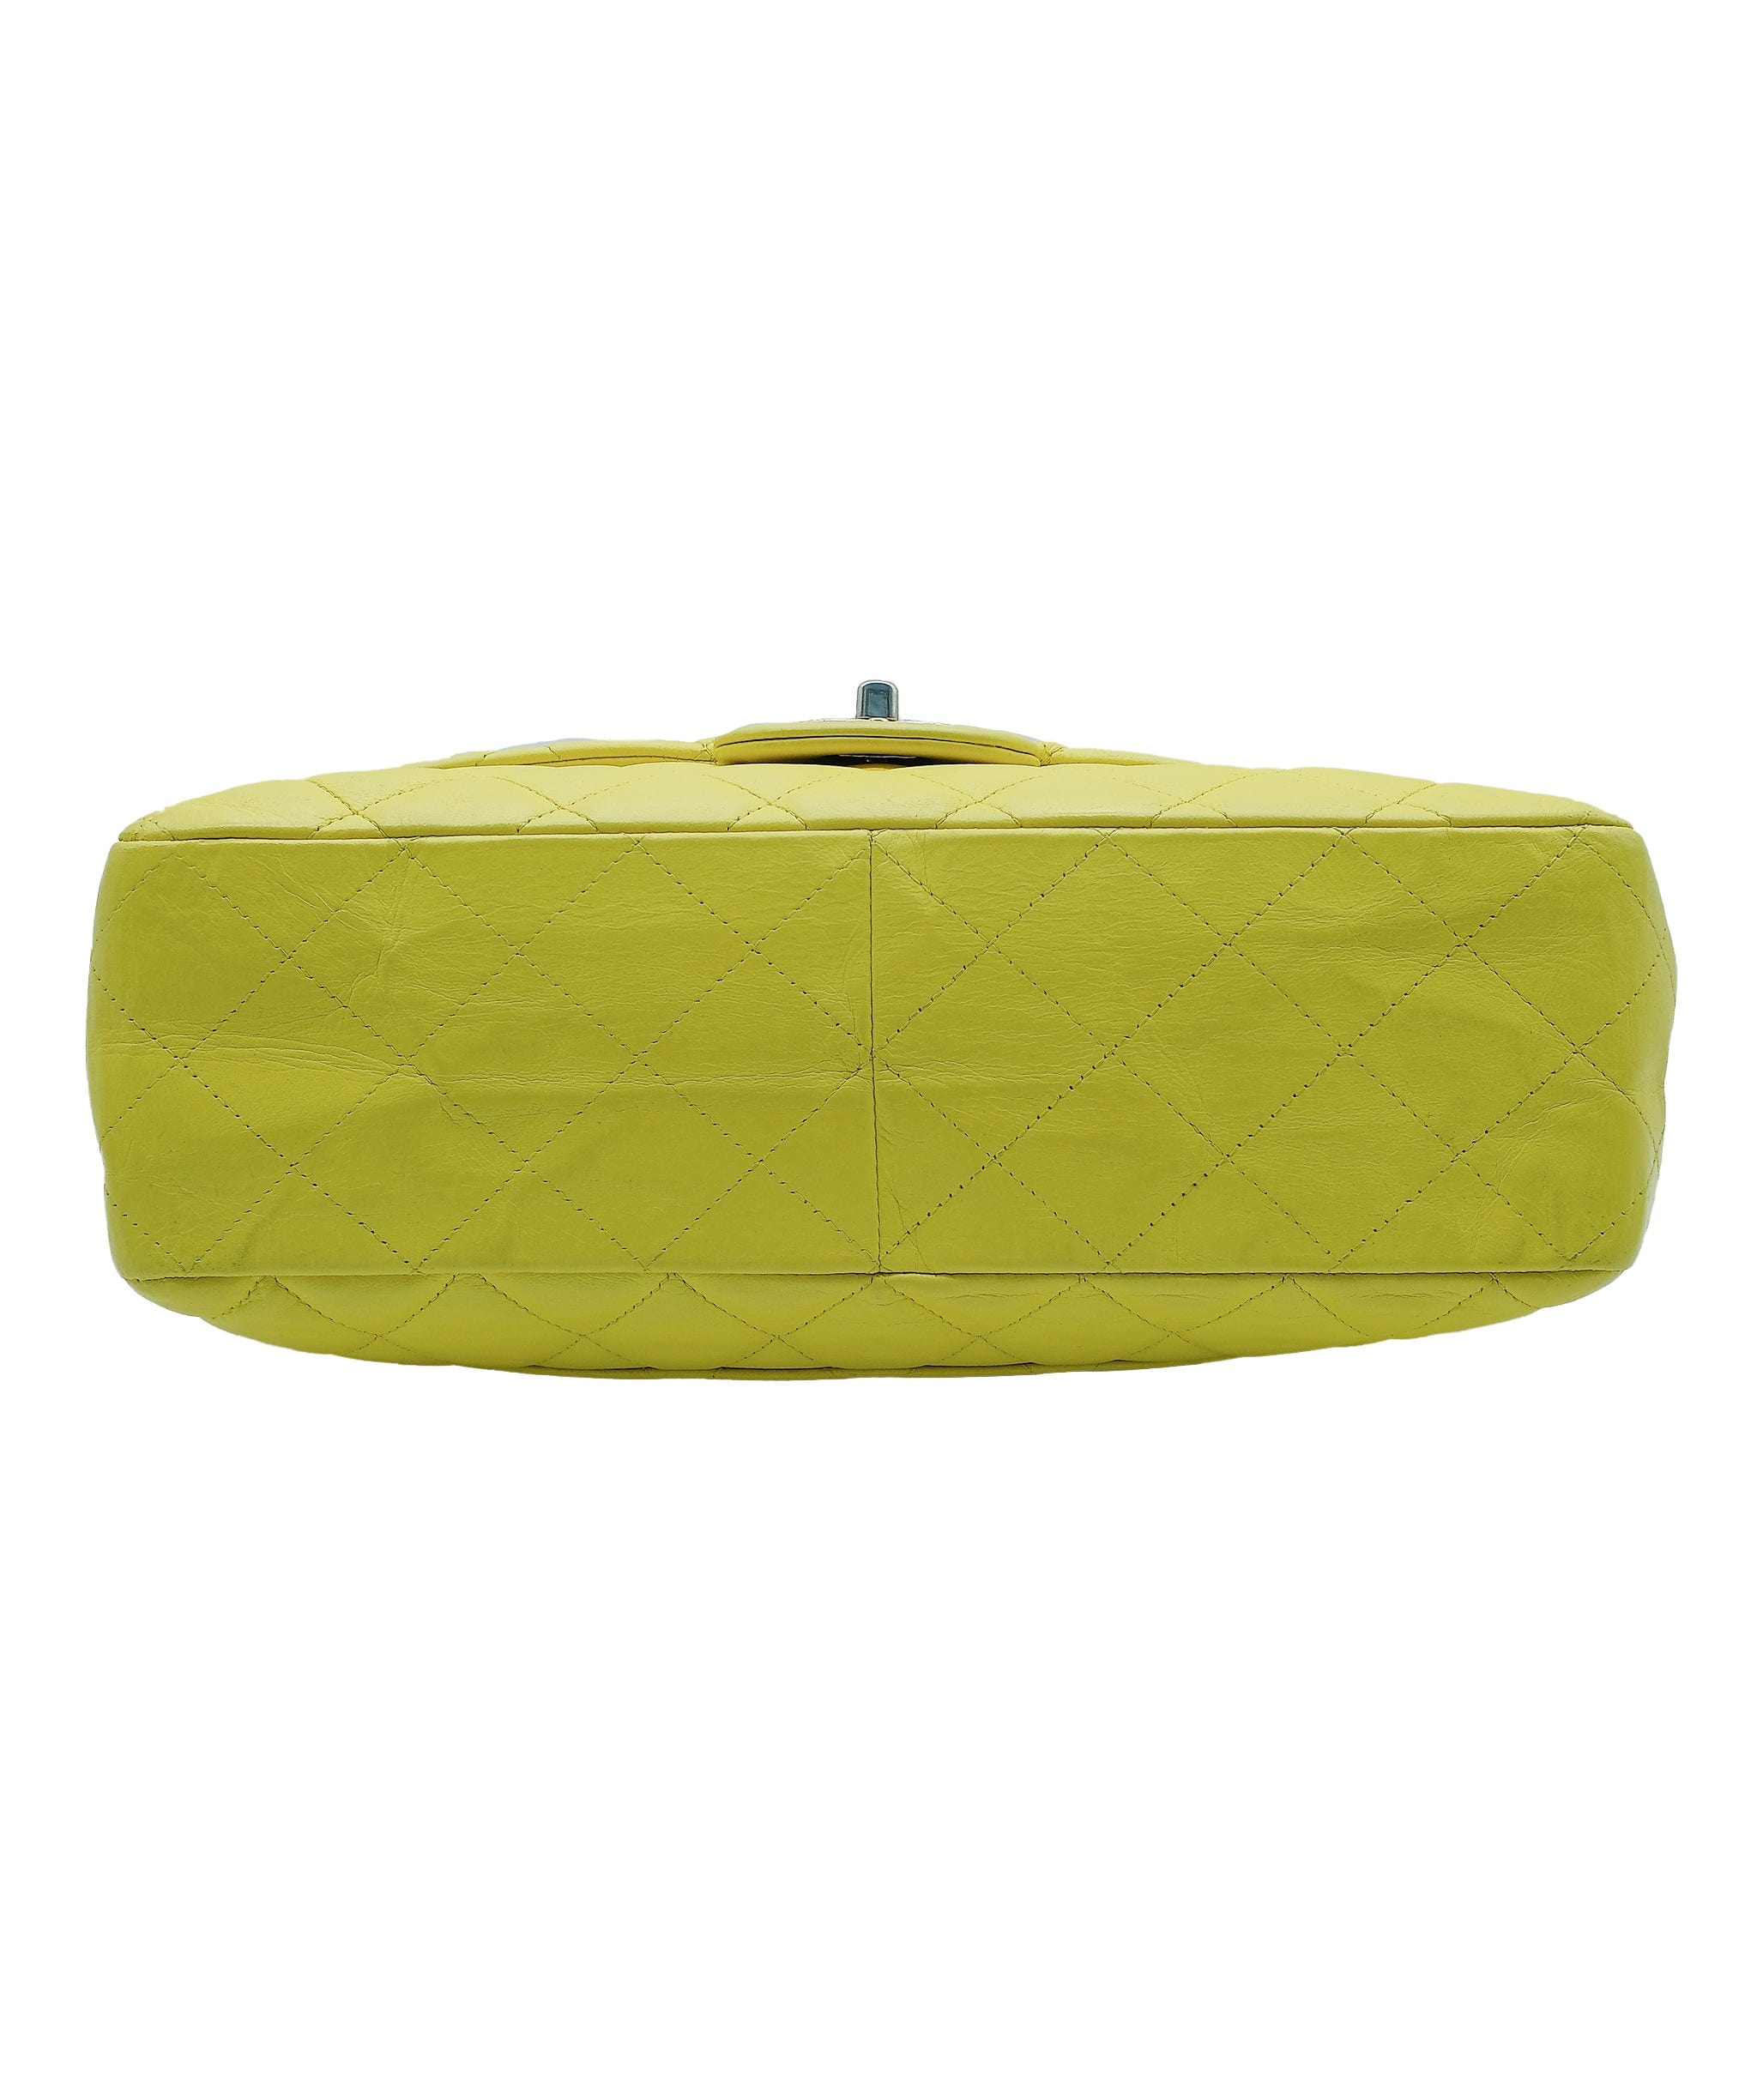 Chanel Chanel Yellow Jumbo Classic Flap Bag REC1252